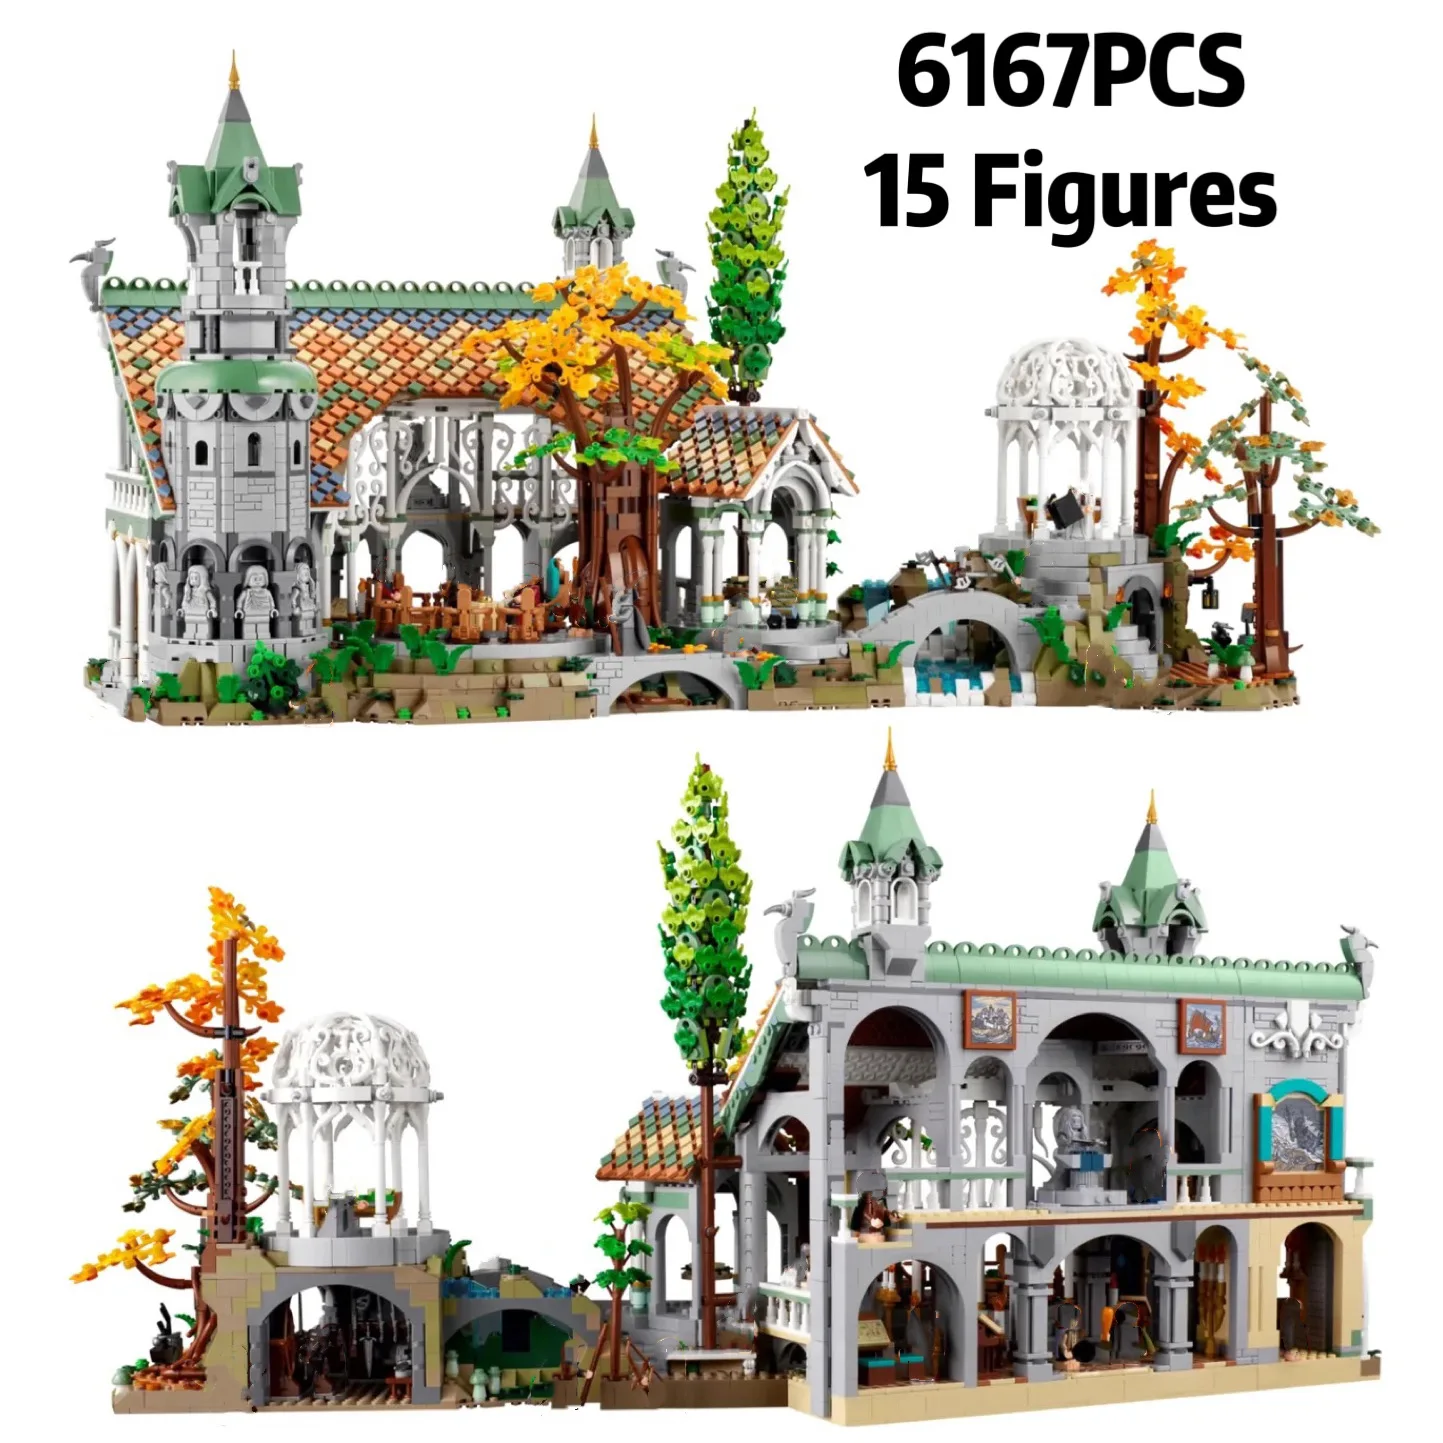 

6167 шт. креативные знаки эксперта из фильма «Lorded Колец», модель замка Ривенделл, строительные блоки, кирпичи 10316, игрушки для улиц